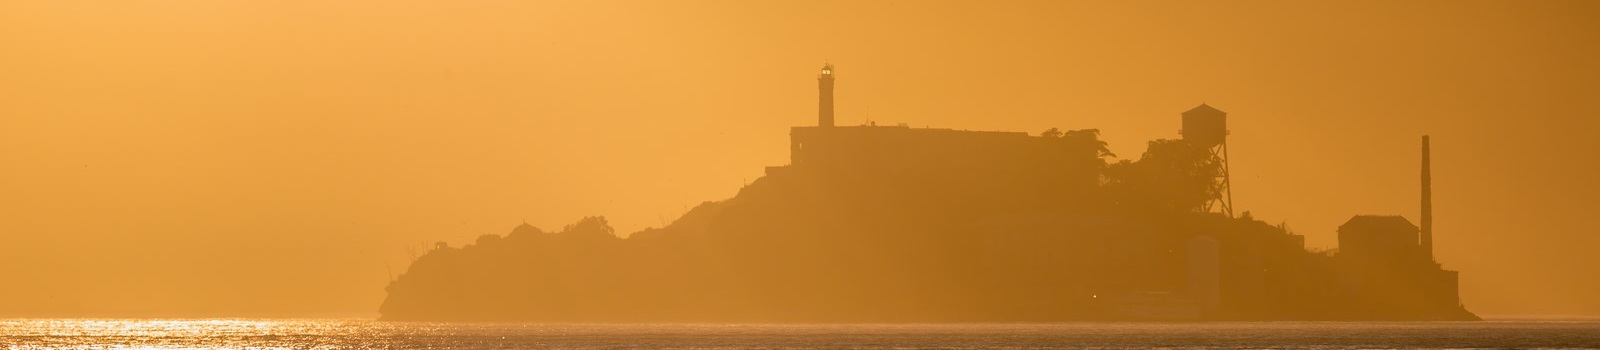 -San Francisco Alcatraz island penitentiary at sunset backlight 173285675